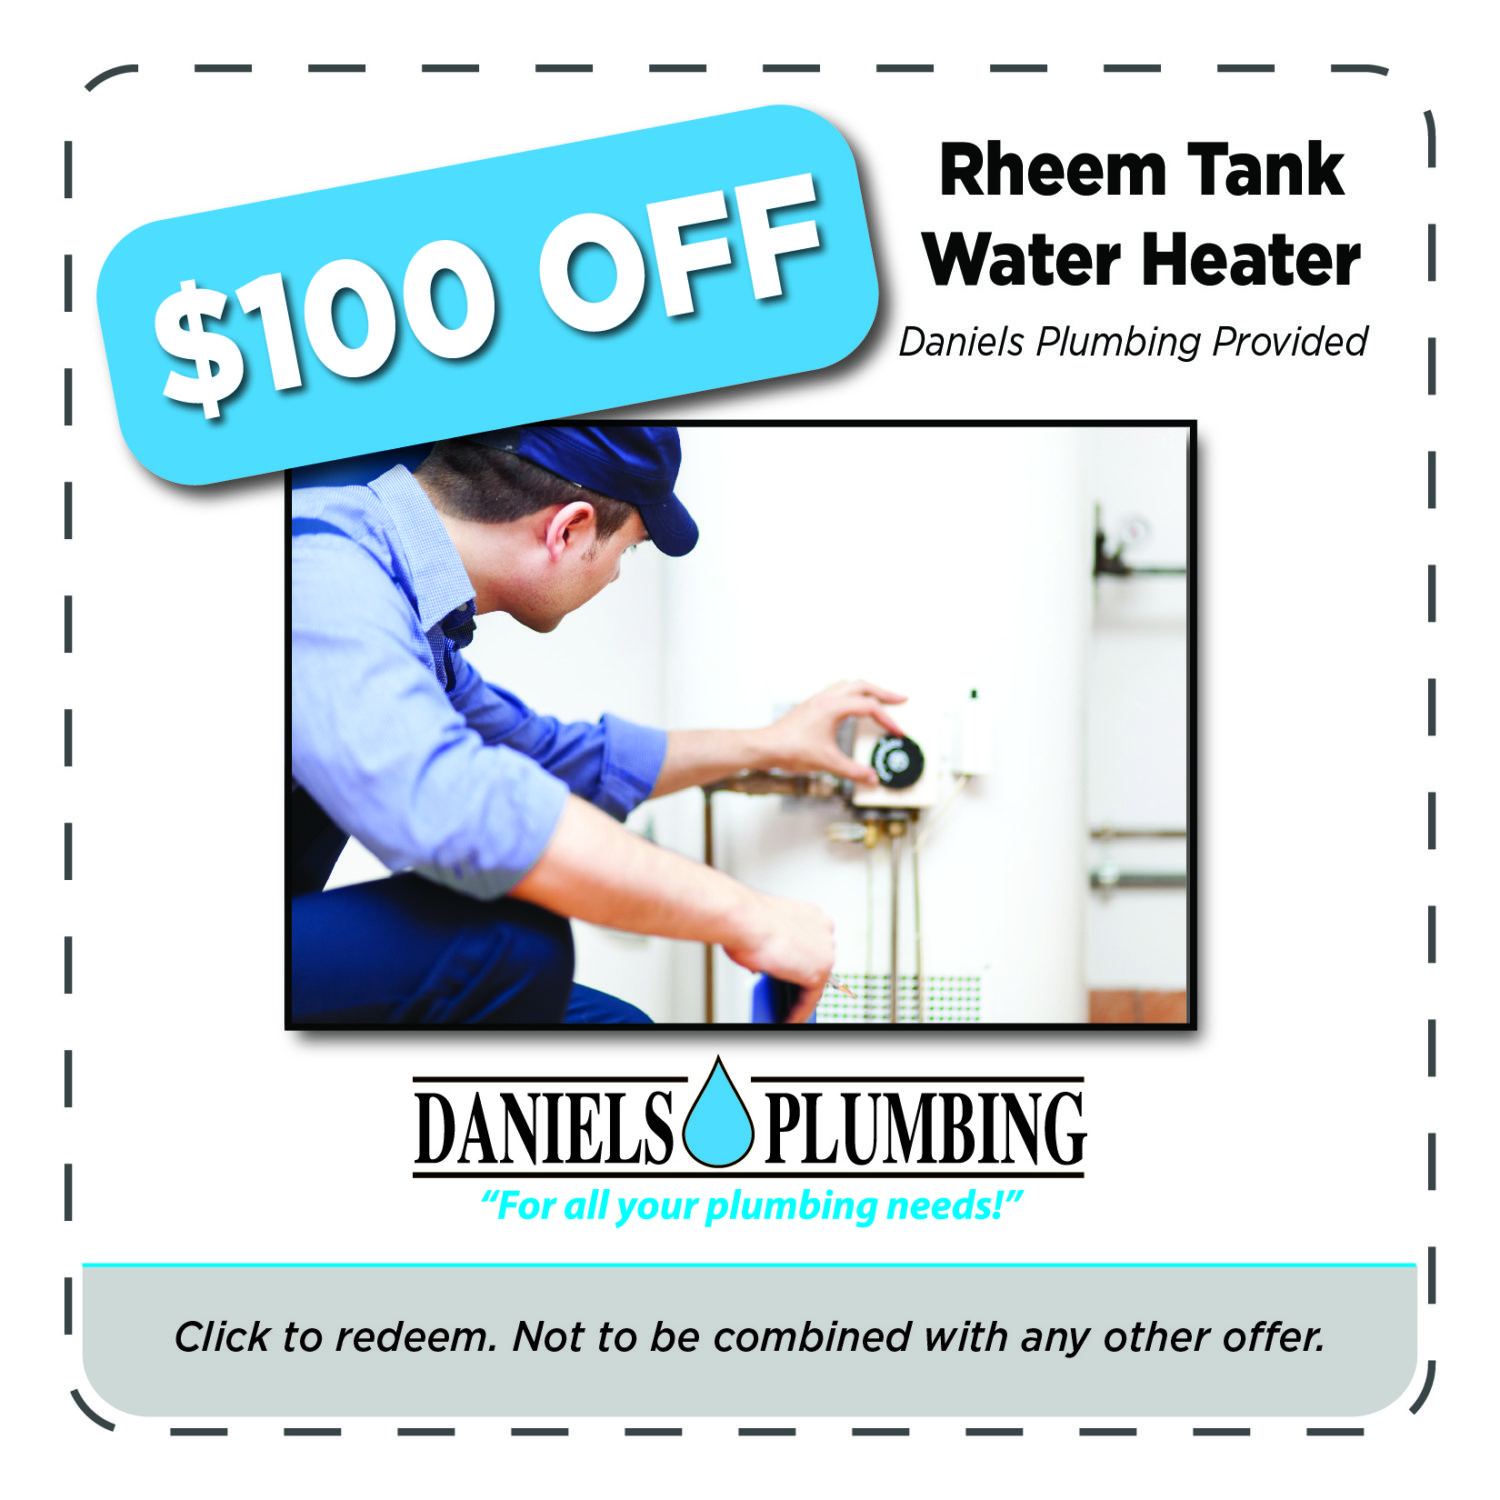 22-2 1124 Daniel's Plumbing Coupons - $100 off Rheem tank